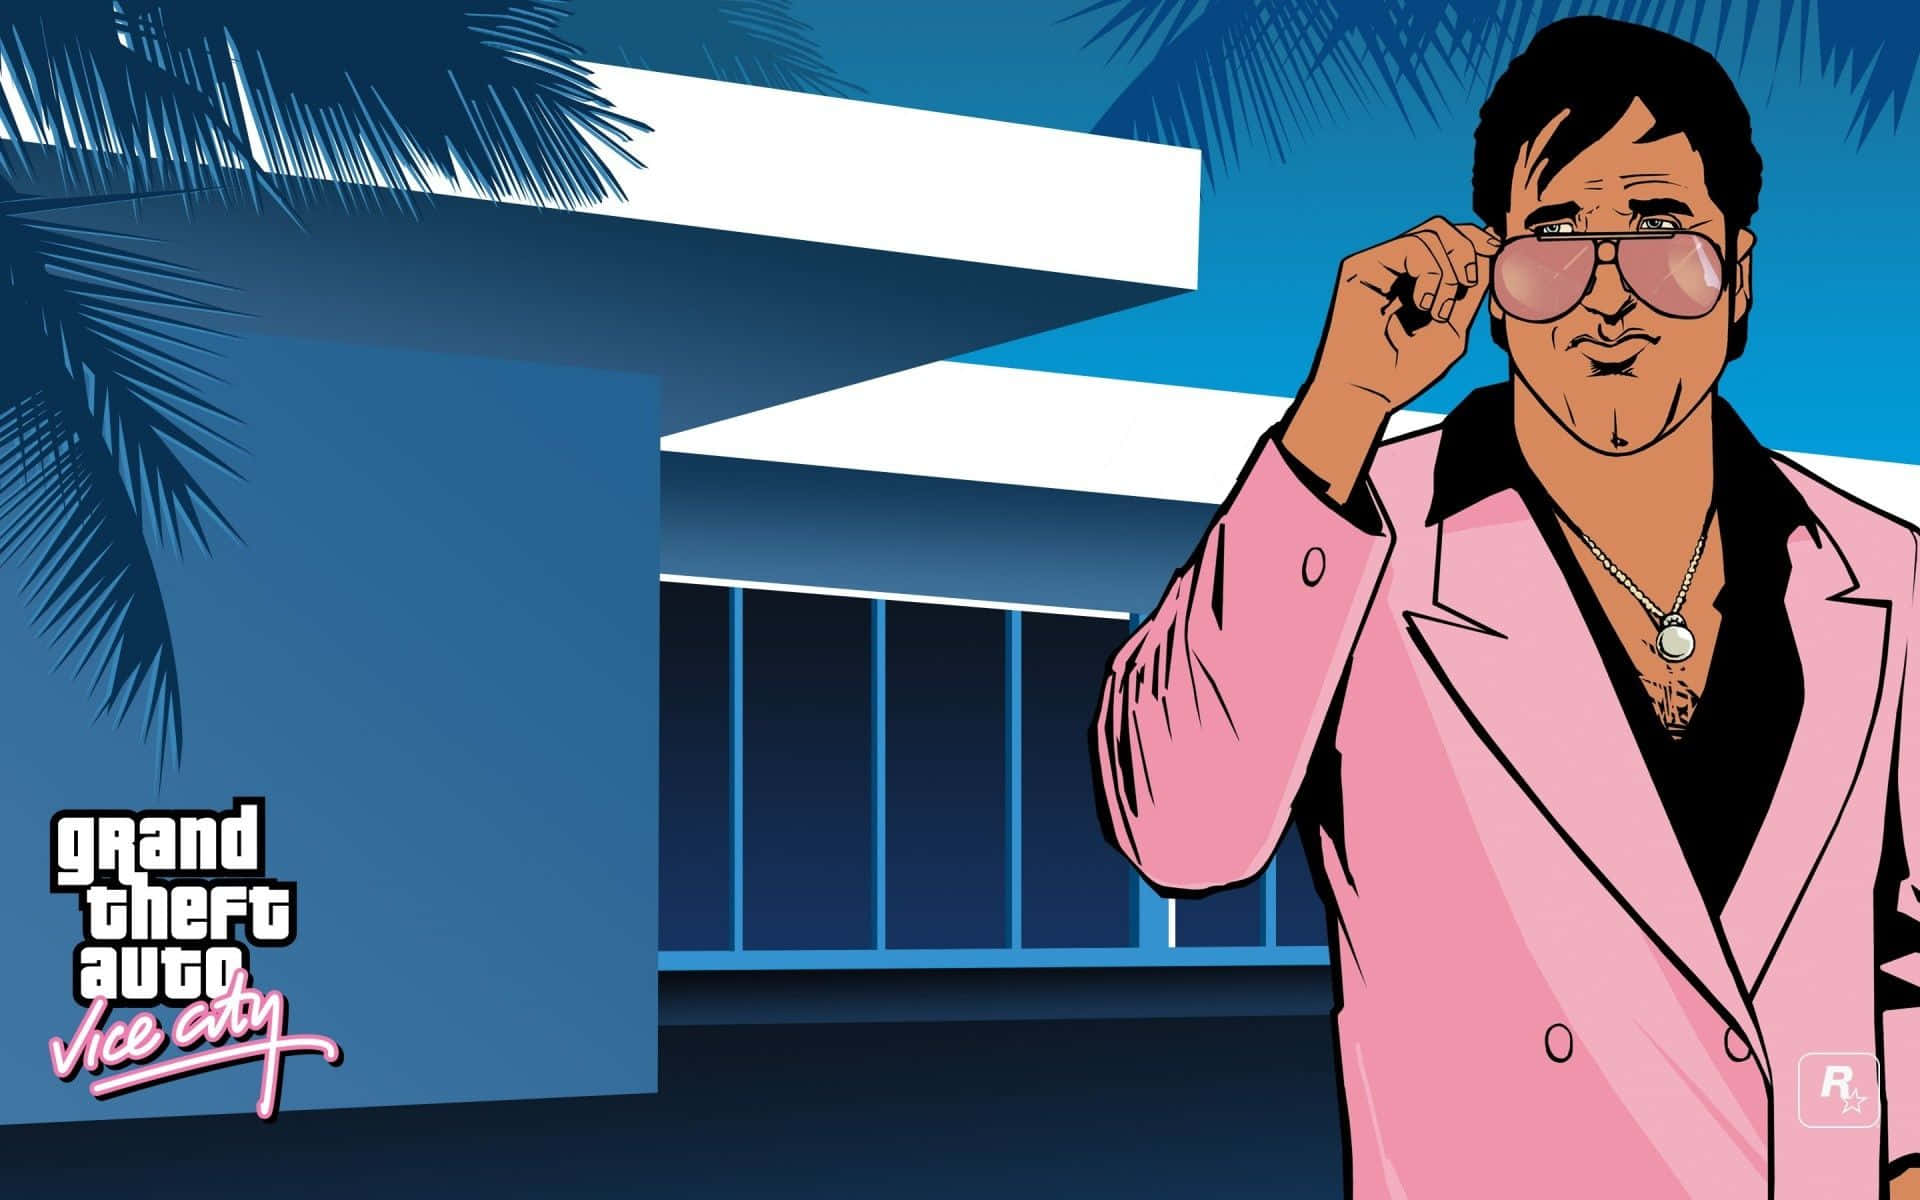 Gören Utflykt Till Miami I Grand Theft Auto Vice City. Wallpaper